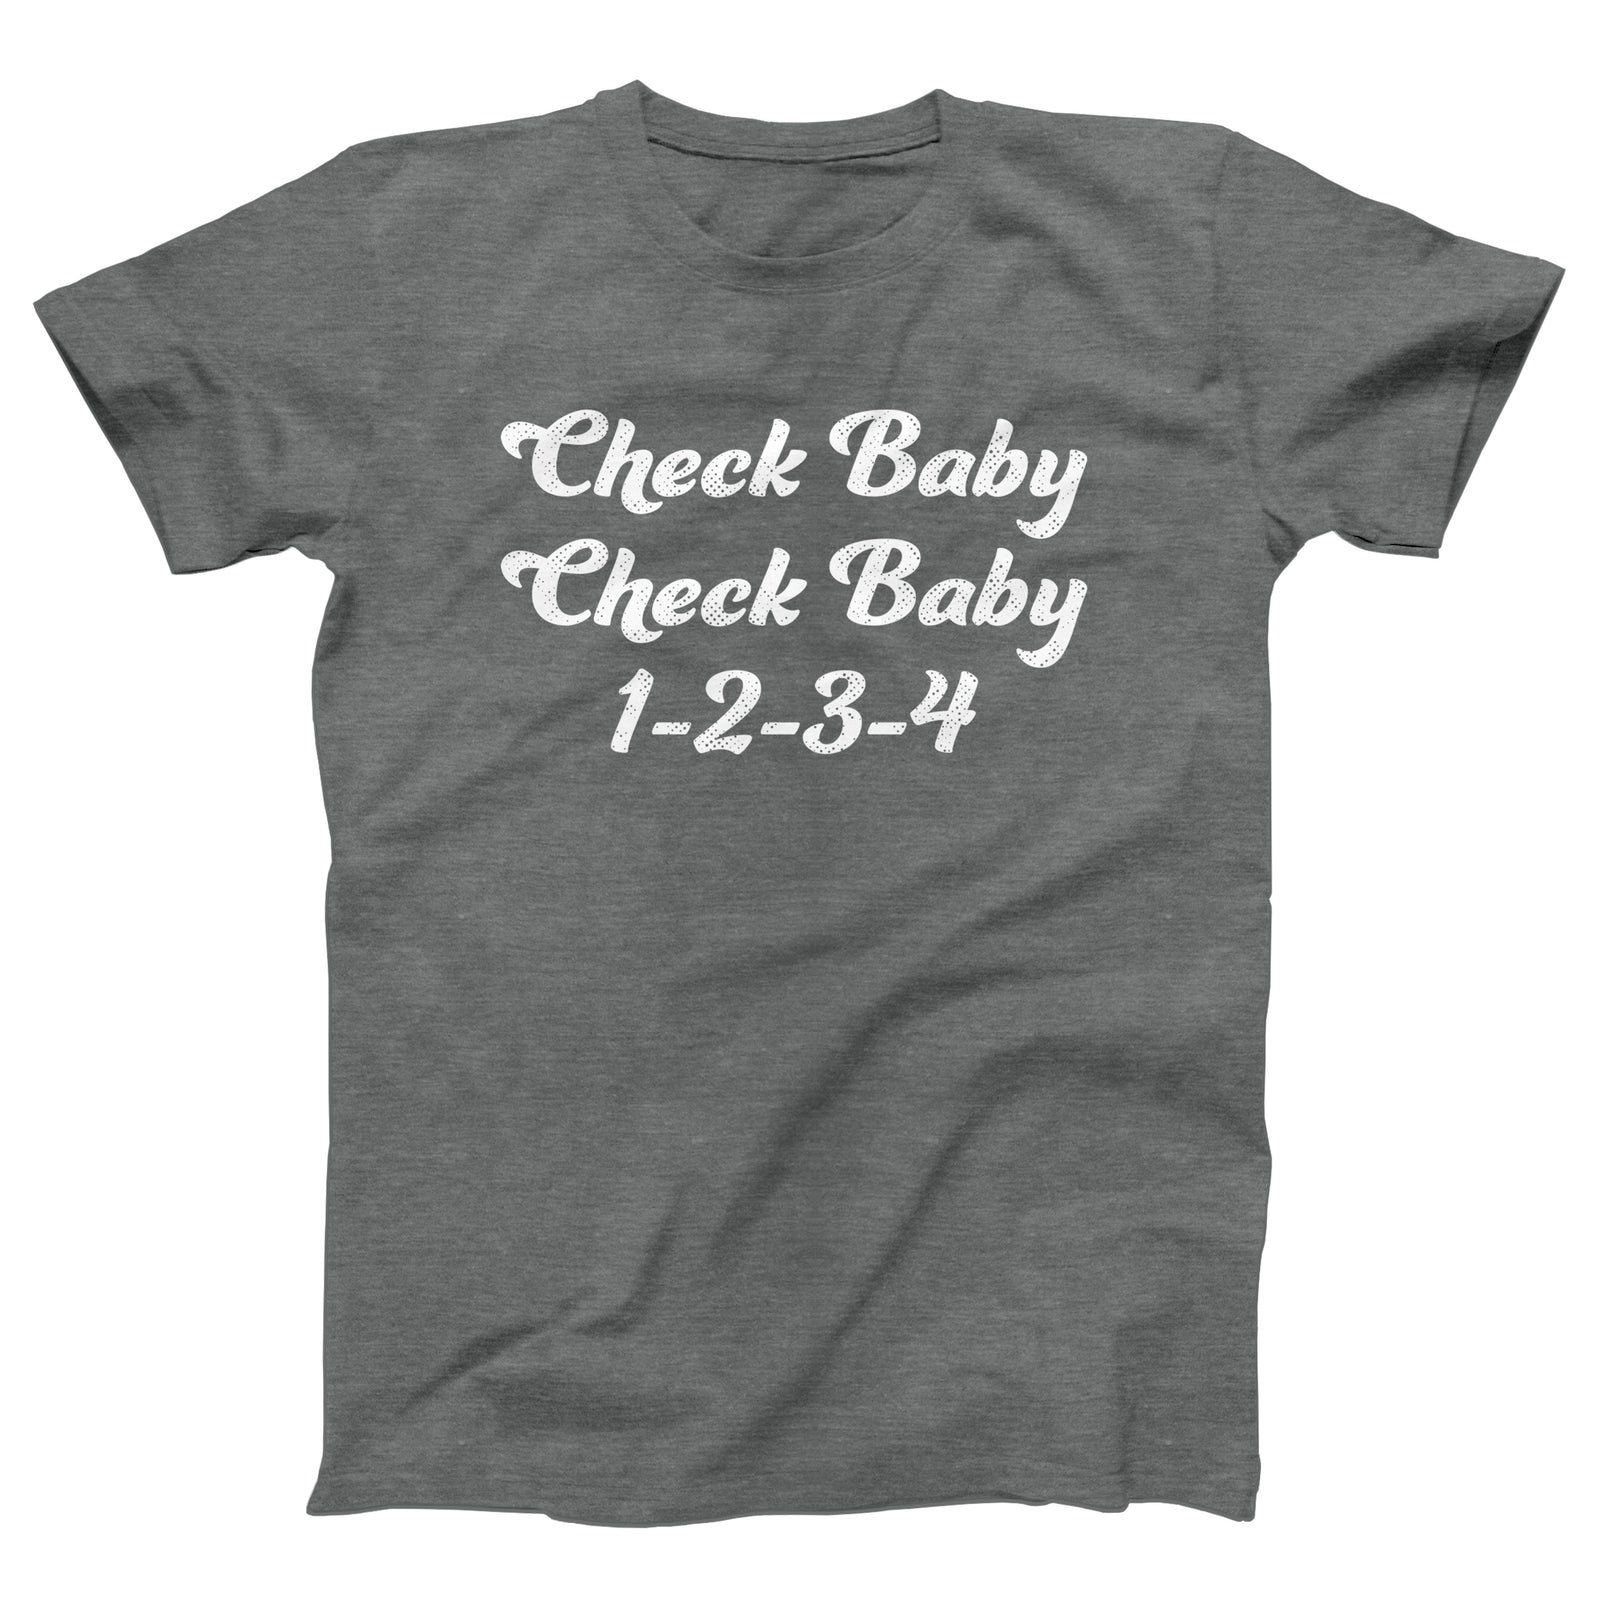 //cdn.shopify.com/s/files/1/0274/2488/2766/products/check-baby-check-baby-menunisex-t-shirt-268137_5000x.jpg?v=1662705647 5000w,
    //cdn.shopify.com/s/files/1/0274/2488/2766/products/check-baby-check-baby-menunisex-t-shirt-268137_4500x.jpg?v=1662705647 4500w,
    //cdn.shopify.com/s/files/1/0274/2488/2766/products/check-baby-check-baby-menunisex-t-shirt-268137_4000x.jpg?v=1662705647 4000w,
    //cdn.shopify.com/s/files/1/0274/2488/2766/products/check-baby-check-baby-menunisex-t-shirt-268137_3500x.jpg?v=1662705647 3500w,
    //cdn.shopify.com/s/files/1/0274/2488/2766/products/check-baby-check-baby-menunisex-t-shirt-268137_3000x.jpg?v=1662705647 3000w,
    //cdn.shopify.com/s/files/1/0274/2488/2766/products/check-baby-check-baby-menunisex-t-shirt-268137_2500x.jpg?v=1662705647 2500w,
    //cdn.shopify.com/s/files/1/0274/2488/2766/products/check-baby-check-baby-menunisex-t-shirt-268137_2000x.jpg?v=1662705647 2000w,
    //cdn.shopify.com/s/files/1/0274/2488/2766/products/check-baby-check-baby-menunisex-t-shirt-268137_1800x.jpg?v=1662705647 1800w,
    //cdn.shopify.com/s/files/1/0274/2488/2766/products/check-baby-check-baby-menunisex-t-shirt-268137_1600x.jpg?v=1662705647 1600w,
    //cdn.shopify.com/s/files/1/0274/2488/2766/products/check-baby-check-baby-menunisex-t-shirt-268137_1400x.jpg?v=1662705647 1400w,
    //cdn.shopify.com/s/files/1/0274/2488/2766/products/check-baby-check-baby-menunisex-t-shirt-268137_1200x.jpg?v=1662705647 1200w,
    //cdn.shopify.com/s/files/1/0274/2488/2766/products/check-baby-check-baby-menunisex-t-shirt-268137_1000x.jpg?v=1662705647 1000w,
    //cdn.shopify.com/s/files/1/0274/2488/2766/products/check-baby-check-baby-menunisex-t-shirt-268137_800x.jpg?v=1662705647 800w,
    //cdn.shopify.com/s/files/1/0274/2488/2766/products/check-baby-check-baby-menunisex-t-shirt-268137_600x.jpg?v=1662705647 600w,
    //cdn.shopify.com/s/files/1/0274/2488/2766/products/check-baby-check-baby-menunisex-t-shirt-268137_400x.jpg?v=1662705647 400w,
    //cdn.shopify.com/s/files/1/0274/2488/2766/products/check-baby-check-baby-menunisex-t-shirt-268137_200x.jpg?v=1662705647 200w